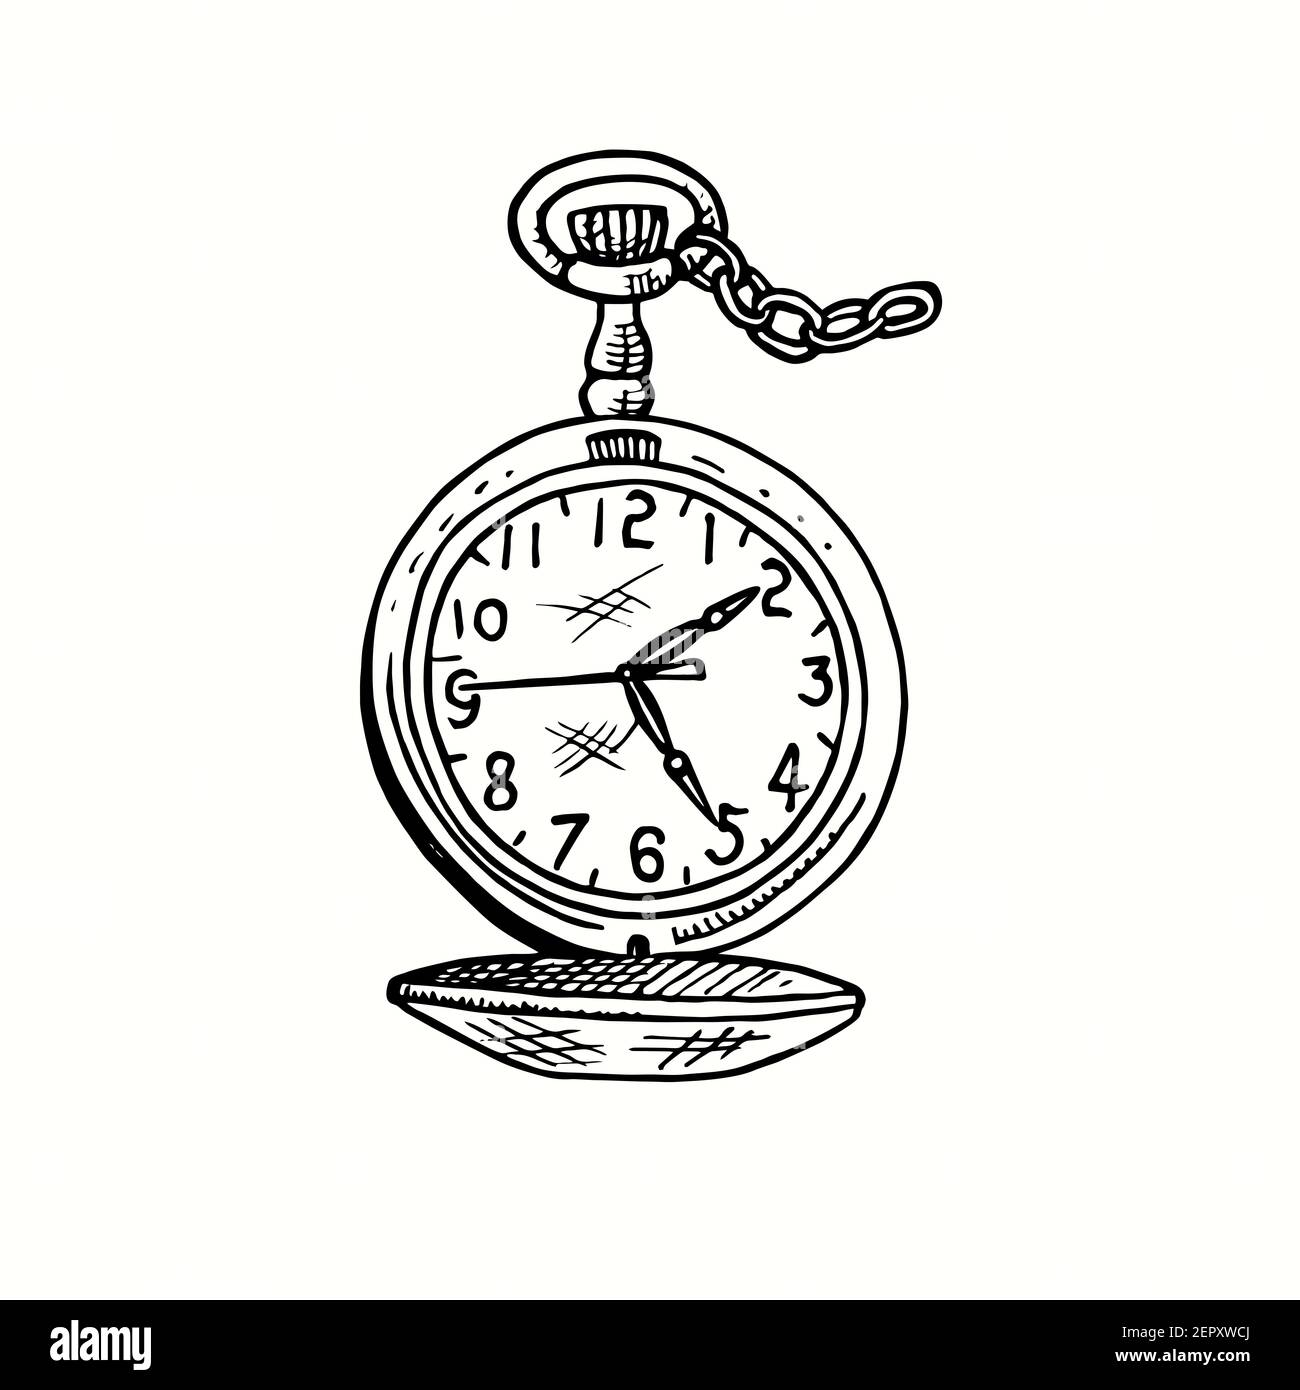 Handgezeichnete Retro-Kettenuhren, offene Vorderansicht. Tinte schwarz-weiß Zeichnung. Stockfoto